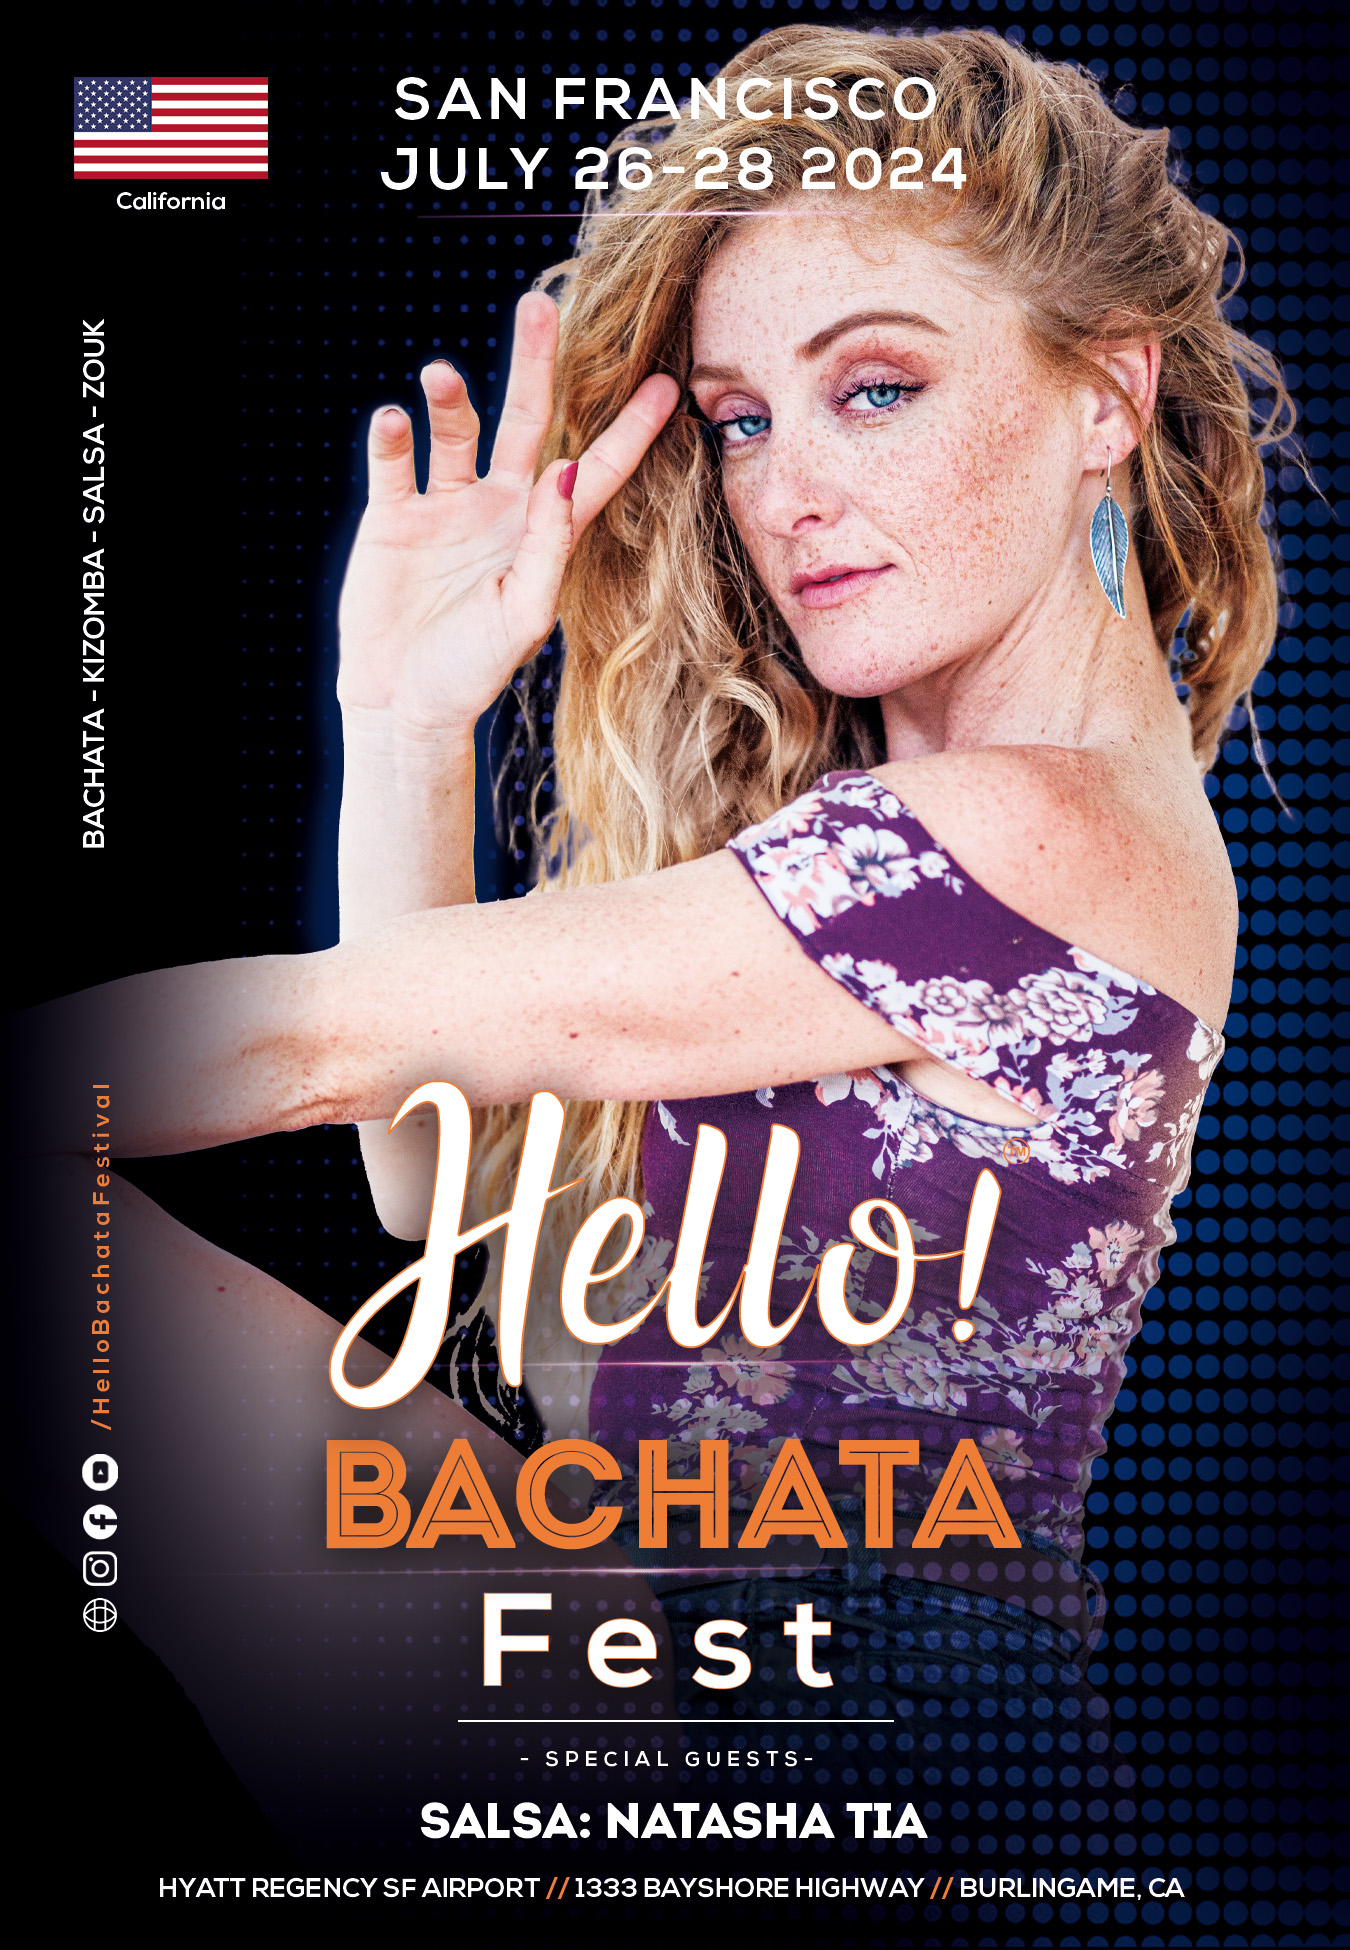 Hello! Bachata Fest - Natasha Tia - Salsa